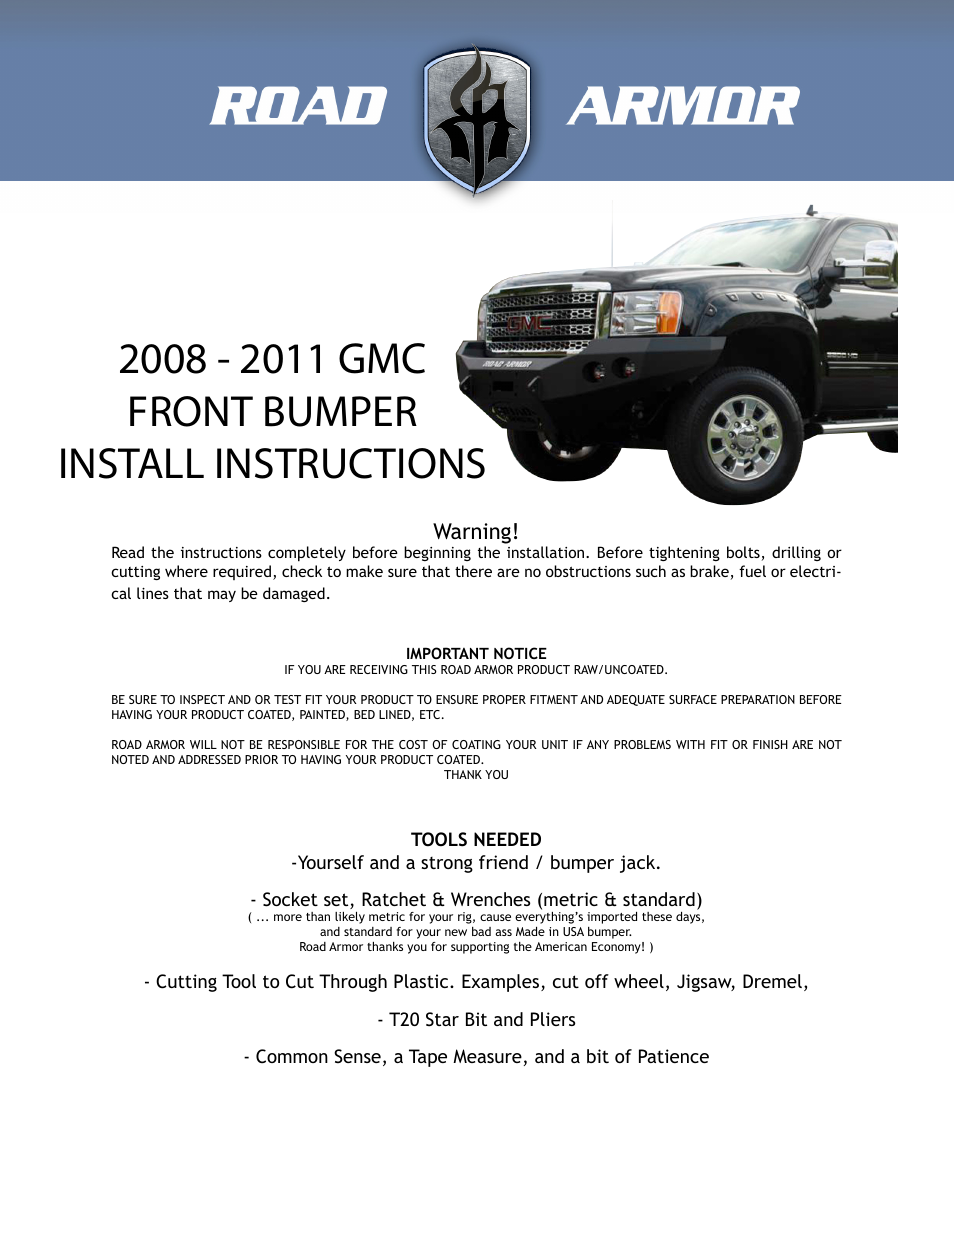 2008-2011 GMC Front Bumper